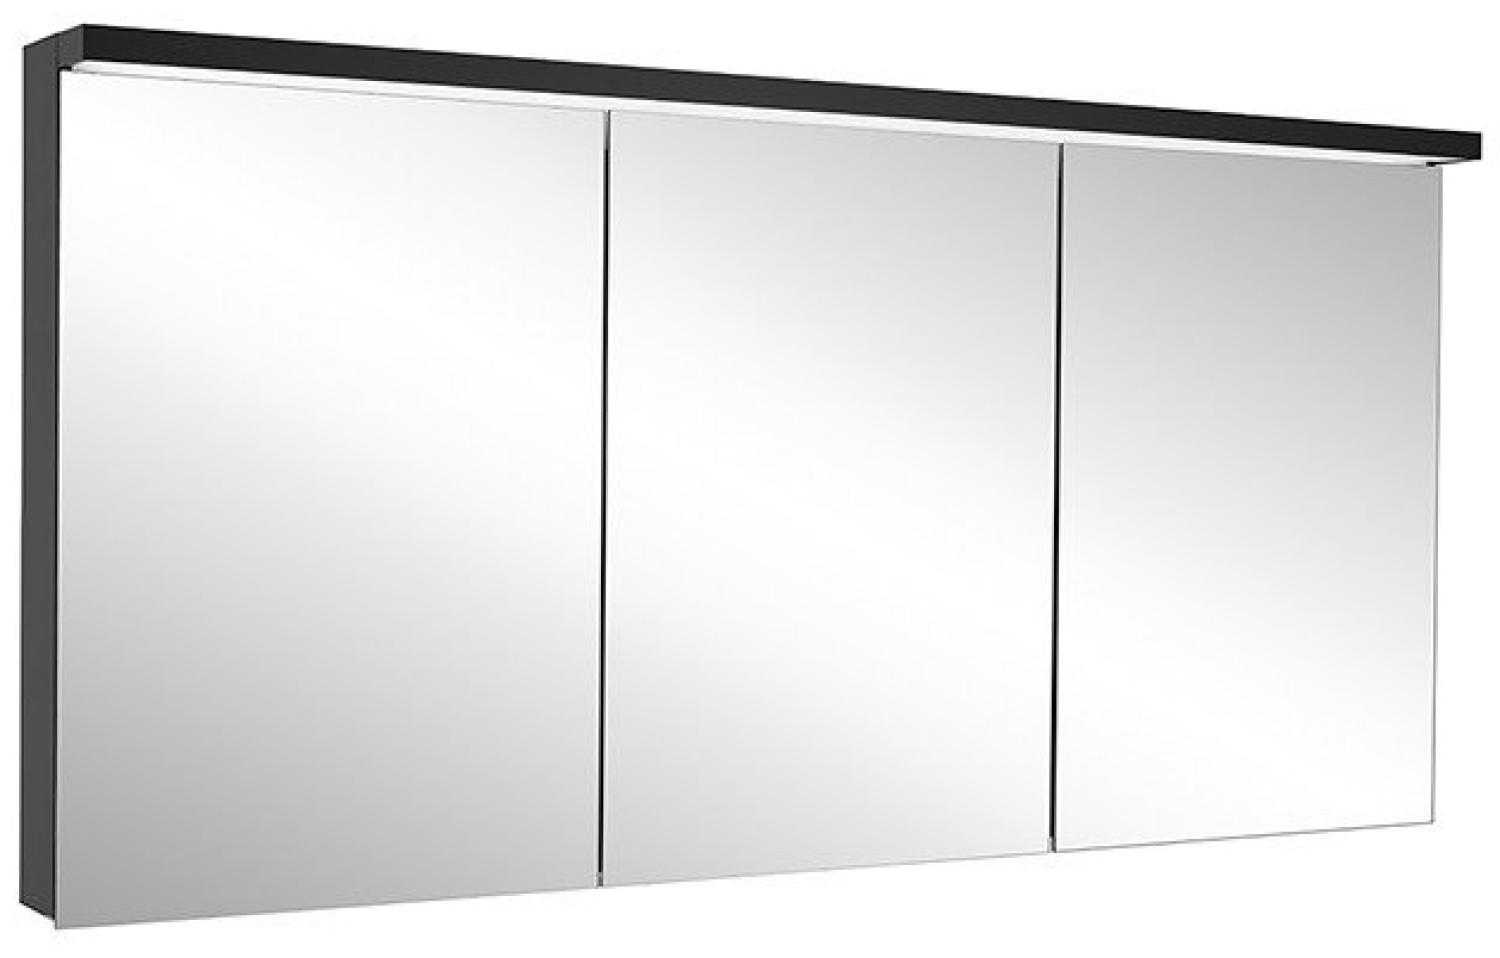 Schneider ADVANCED Line Ultimate LED Lichtspiegelschrank, 3 gleichgrosse Türen, 149,5x72,6x17,8cm, 188. 151, Ausführung: EU-Norm/Korpus schwarz matt - 188. 151. 02. 41 Bild 1